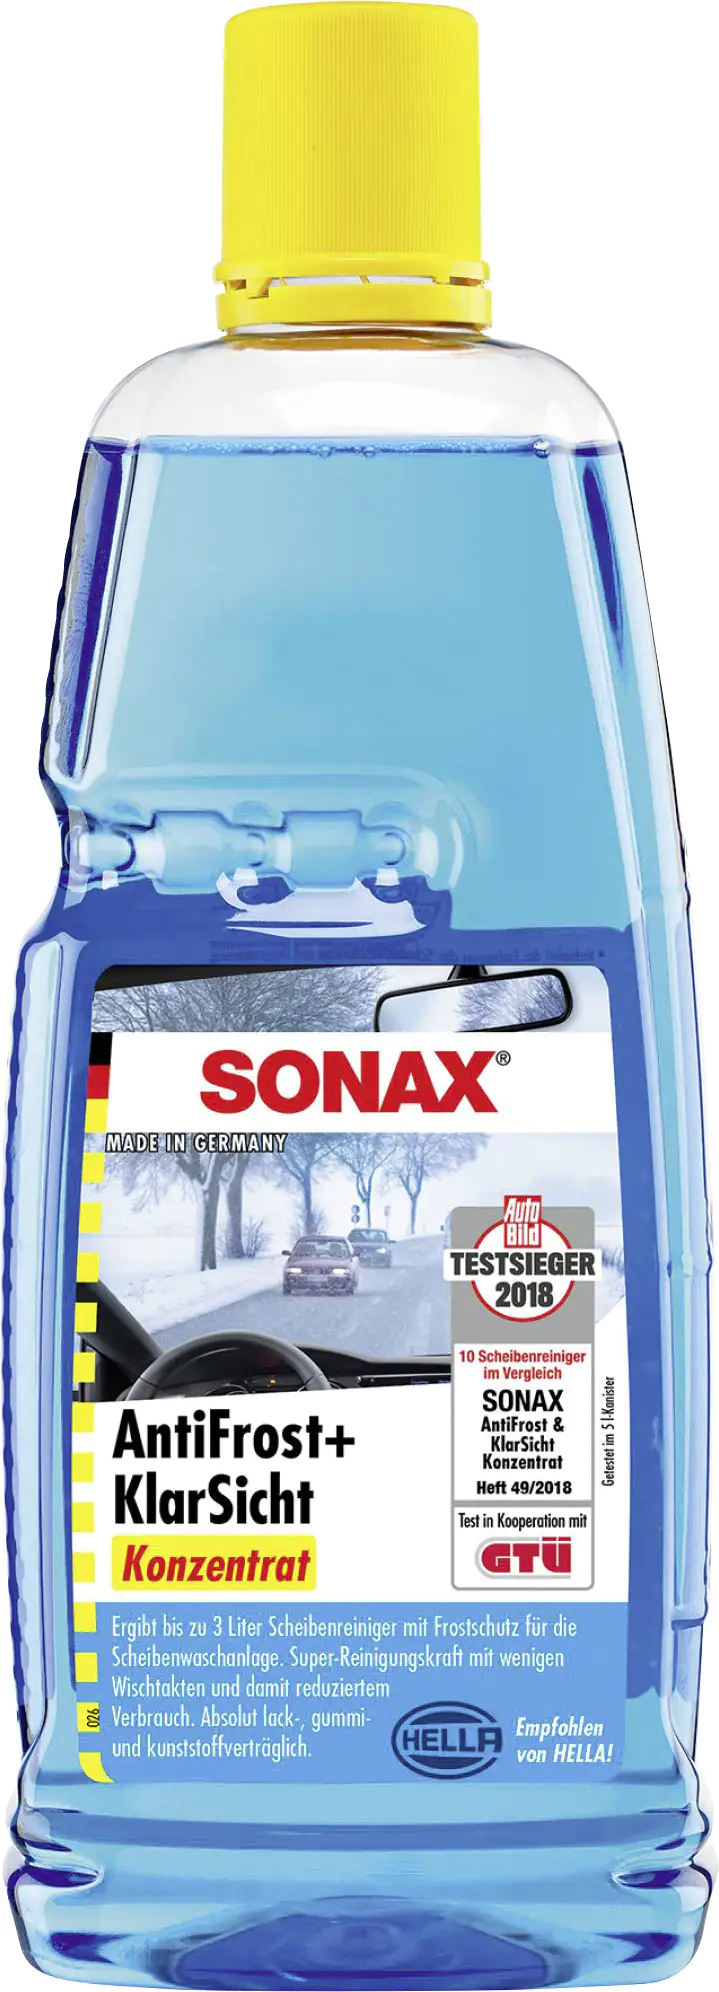 Sonax Scheibenreiniger Antifrost + Klarsicht bis -30°C Konzentrat